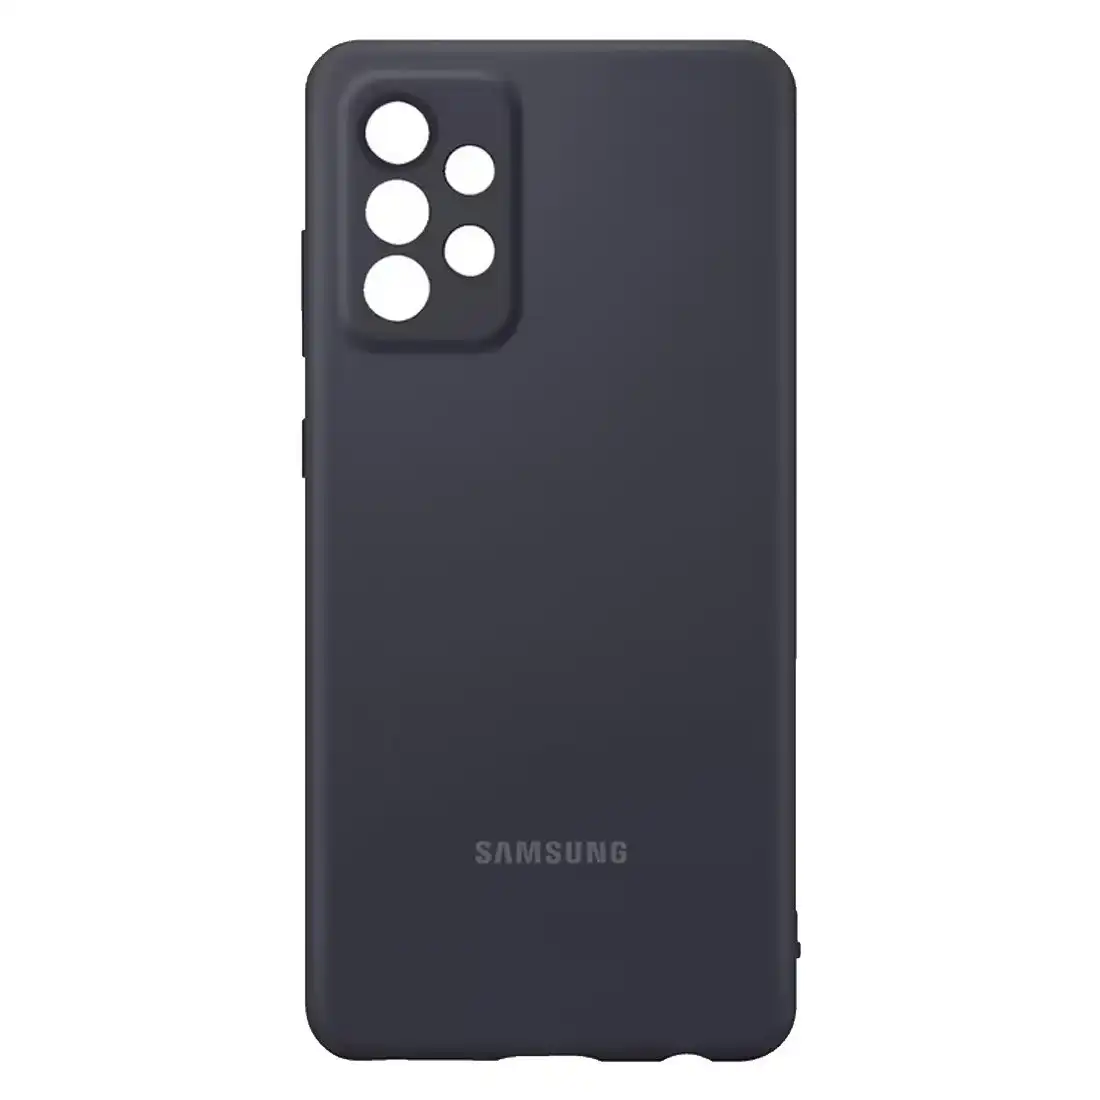 Samsung Galaxy A72 Silicone Cover EF-PA725TBEGWW - Black